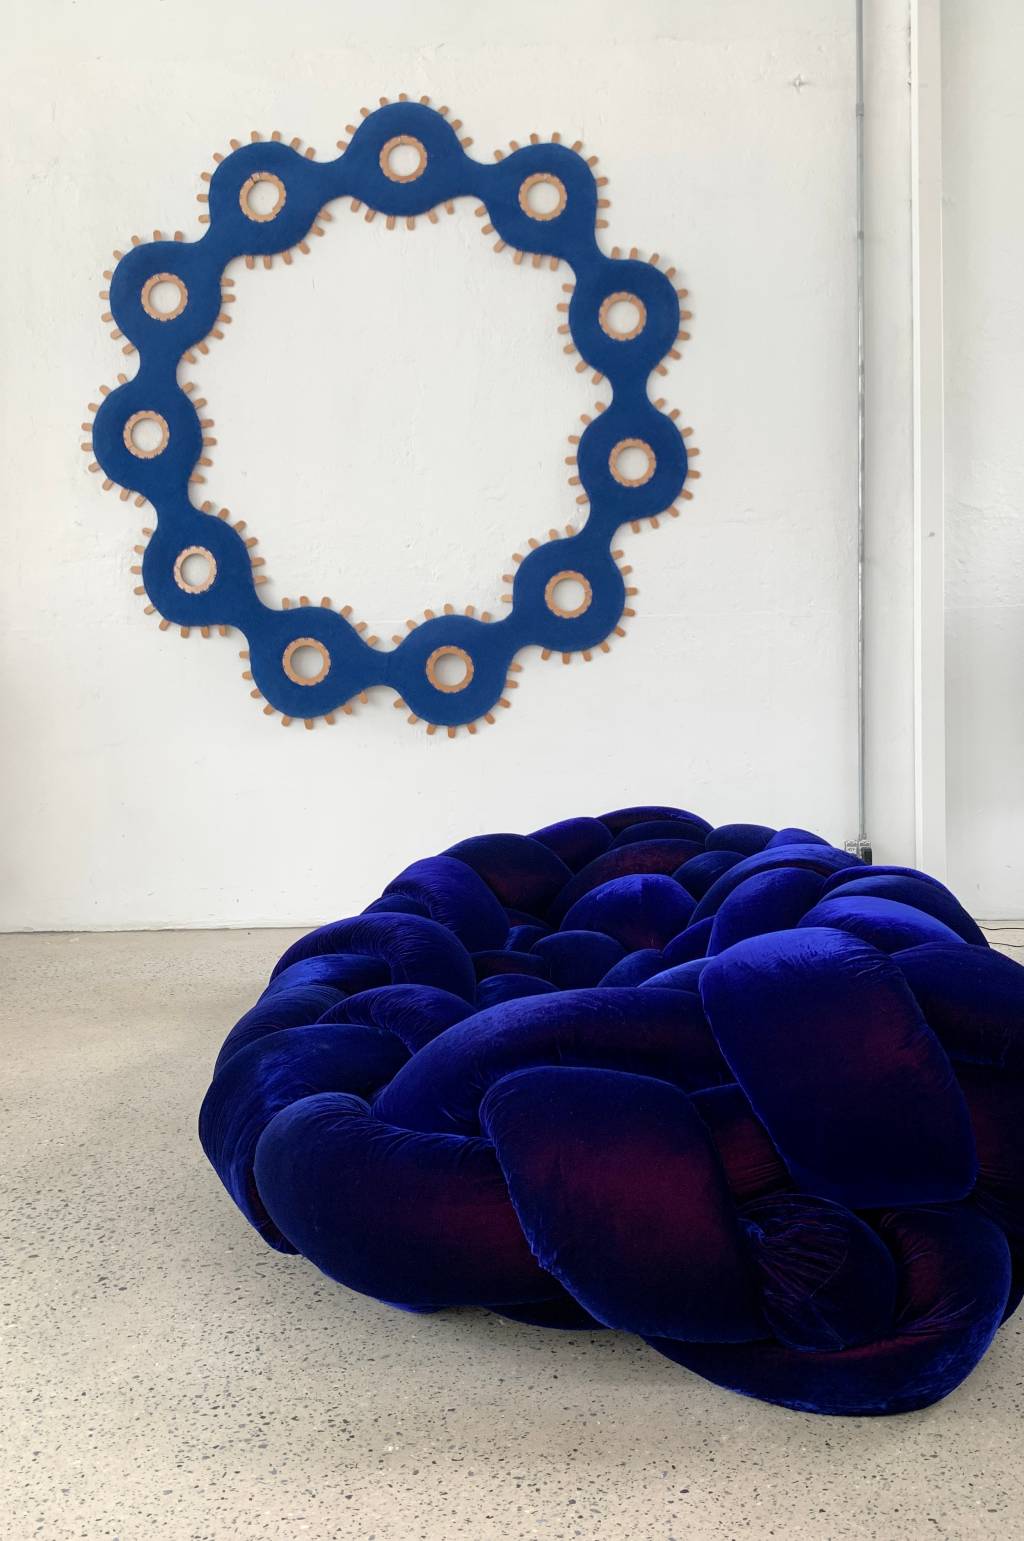 Poltrona com formato de pufe na cor azul-esuro e adorno circular na parede ao fundo.